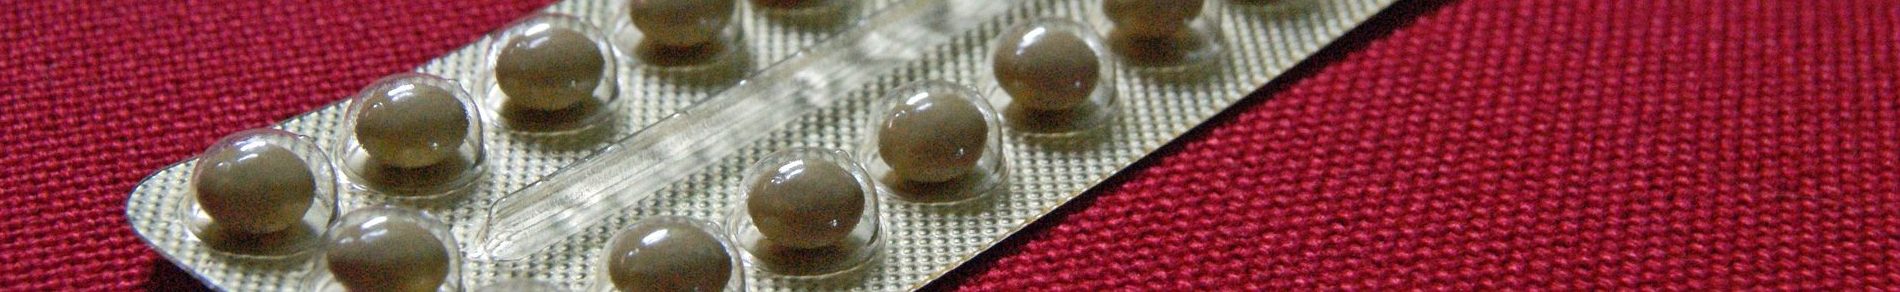 Как выбрать контрацептивы по возрасту, физиологическим особенностям и состоянию здоровья